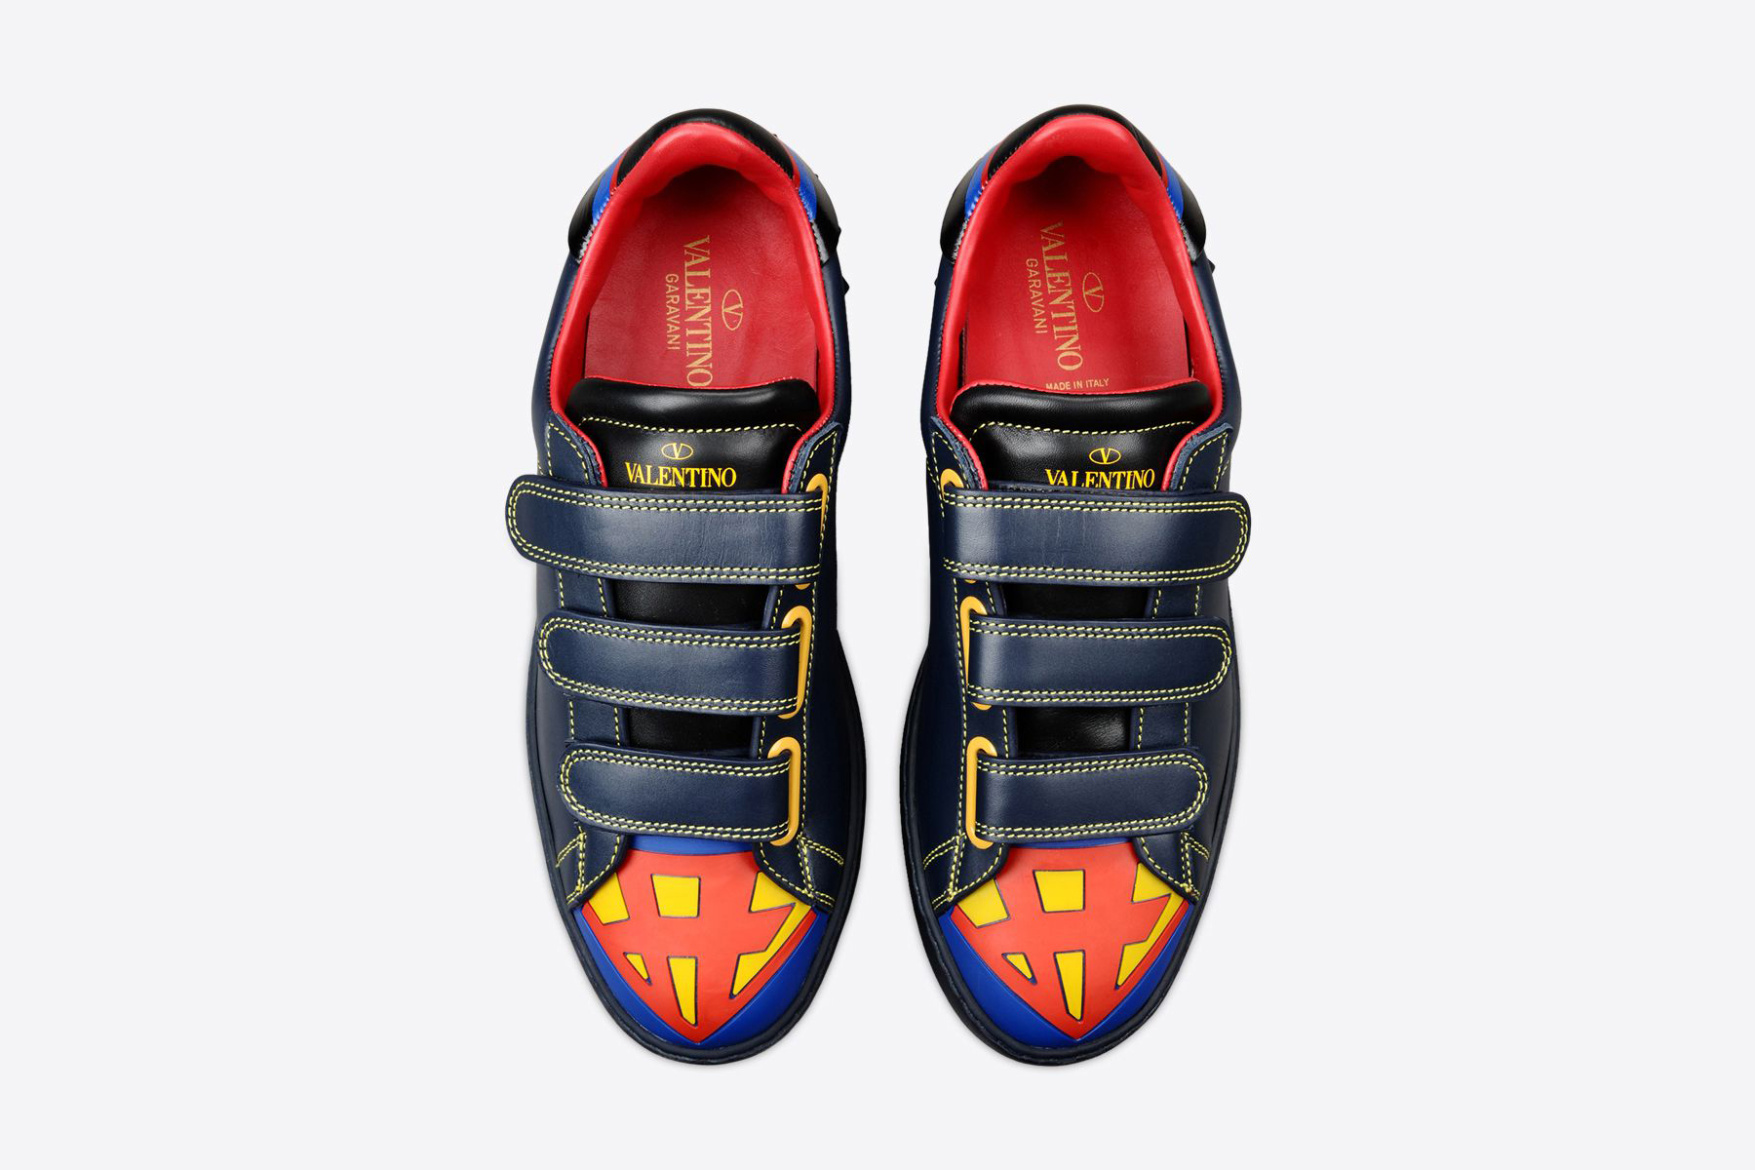 超级英雄也时尚 ‧ Valentino 推出 2016「超级英雄」系列运动鞋款